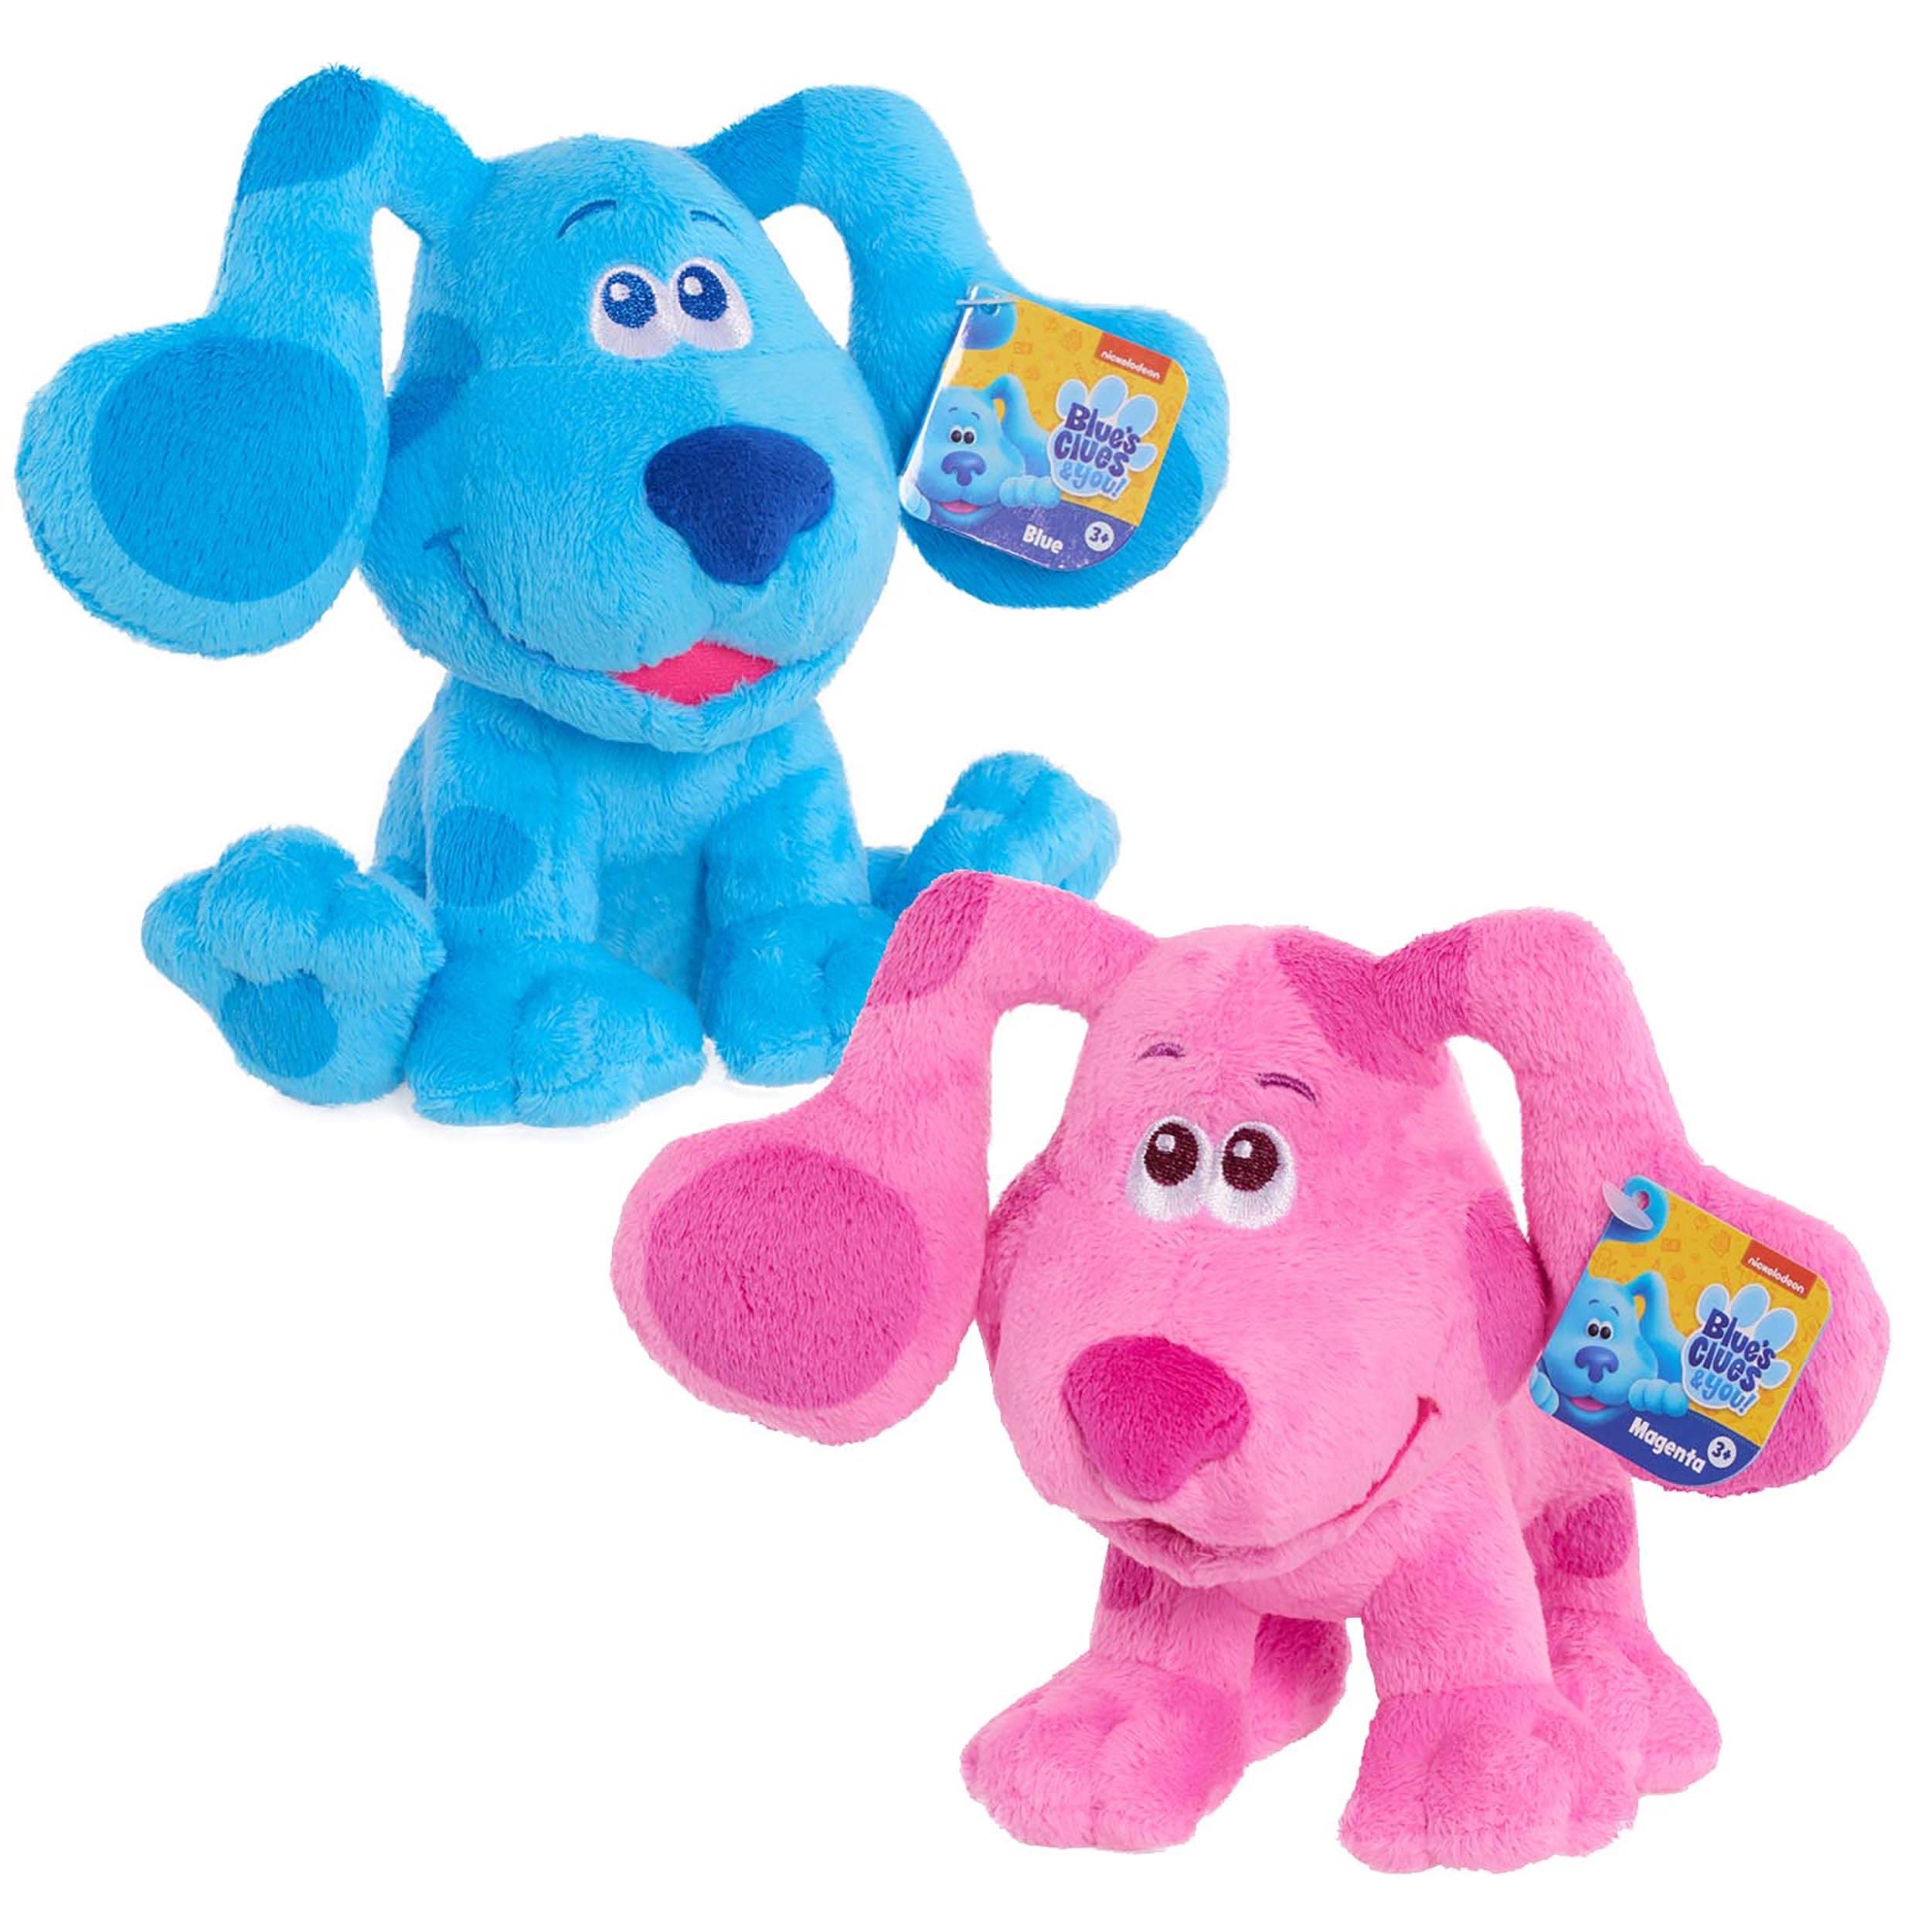 Blue's Clues & You - Blue and Friends Plüschtier 17 cm, Verschiedene Modelle erhältlich, Spielzeug für Kinder ab 3 Jahren, BLU00000